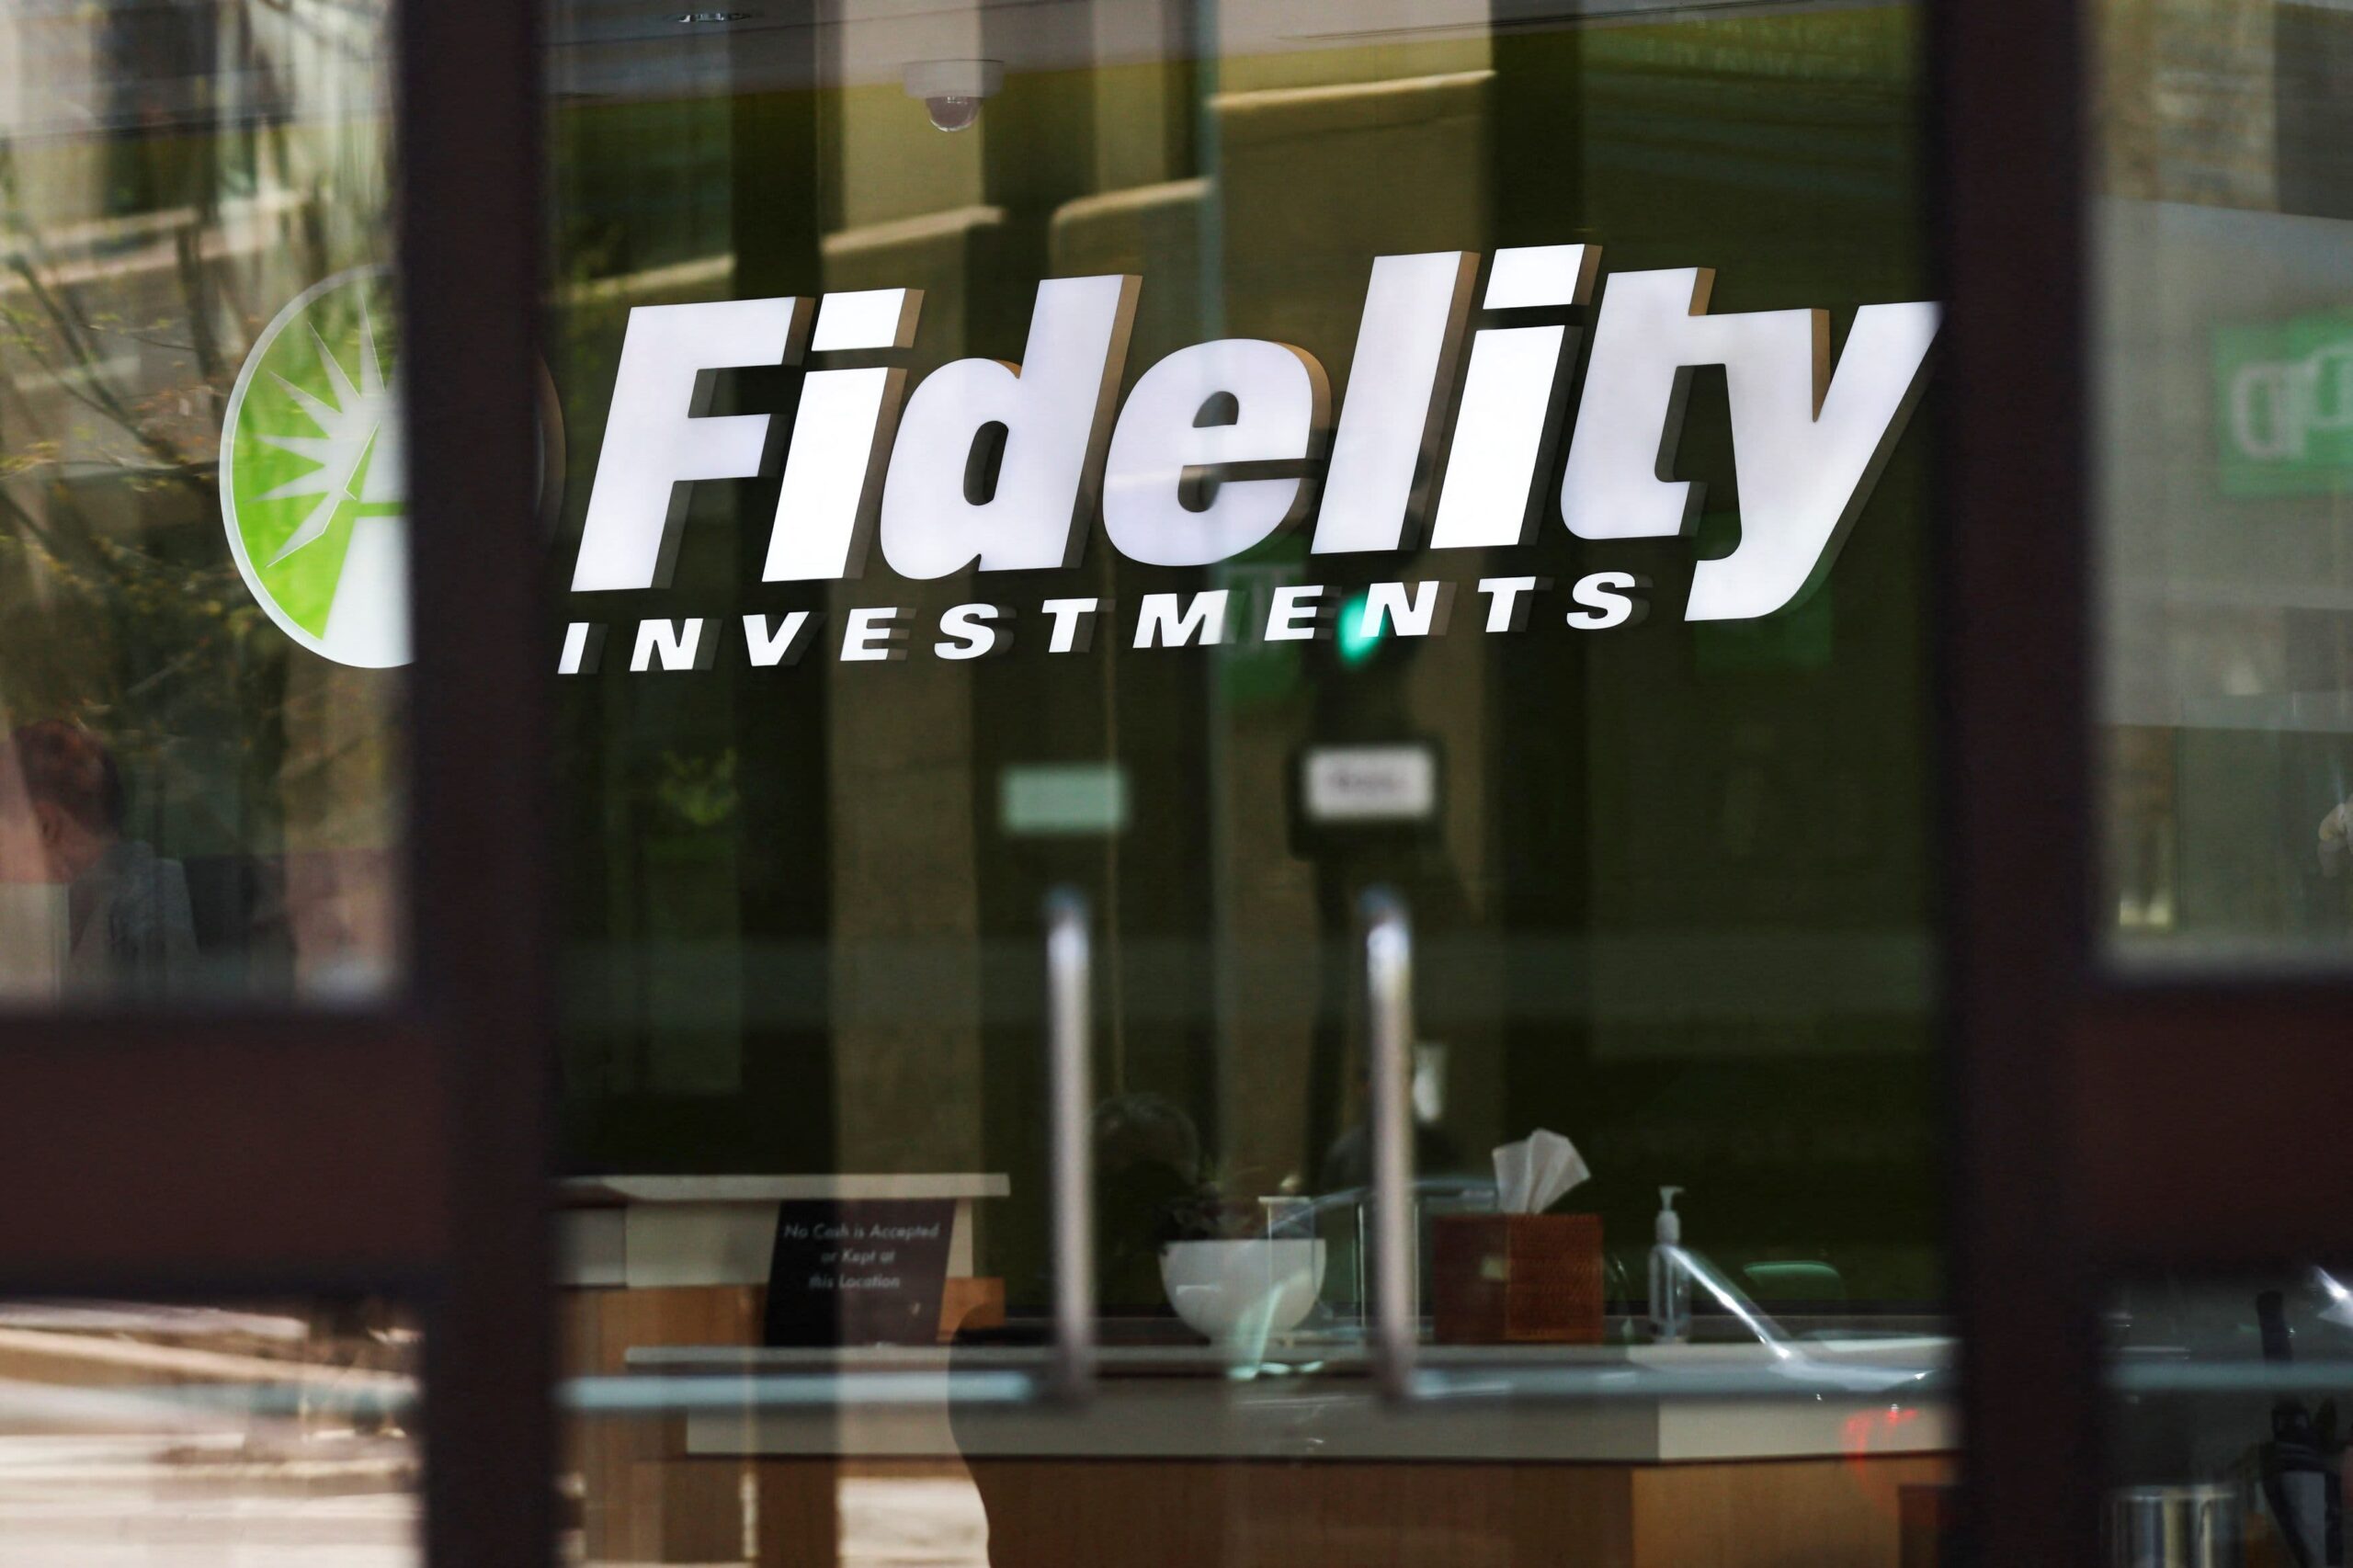 Zdjęcie loga i napisu Fidelity Investments na budynku